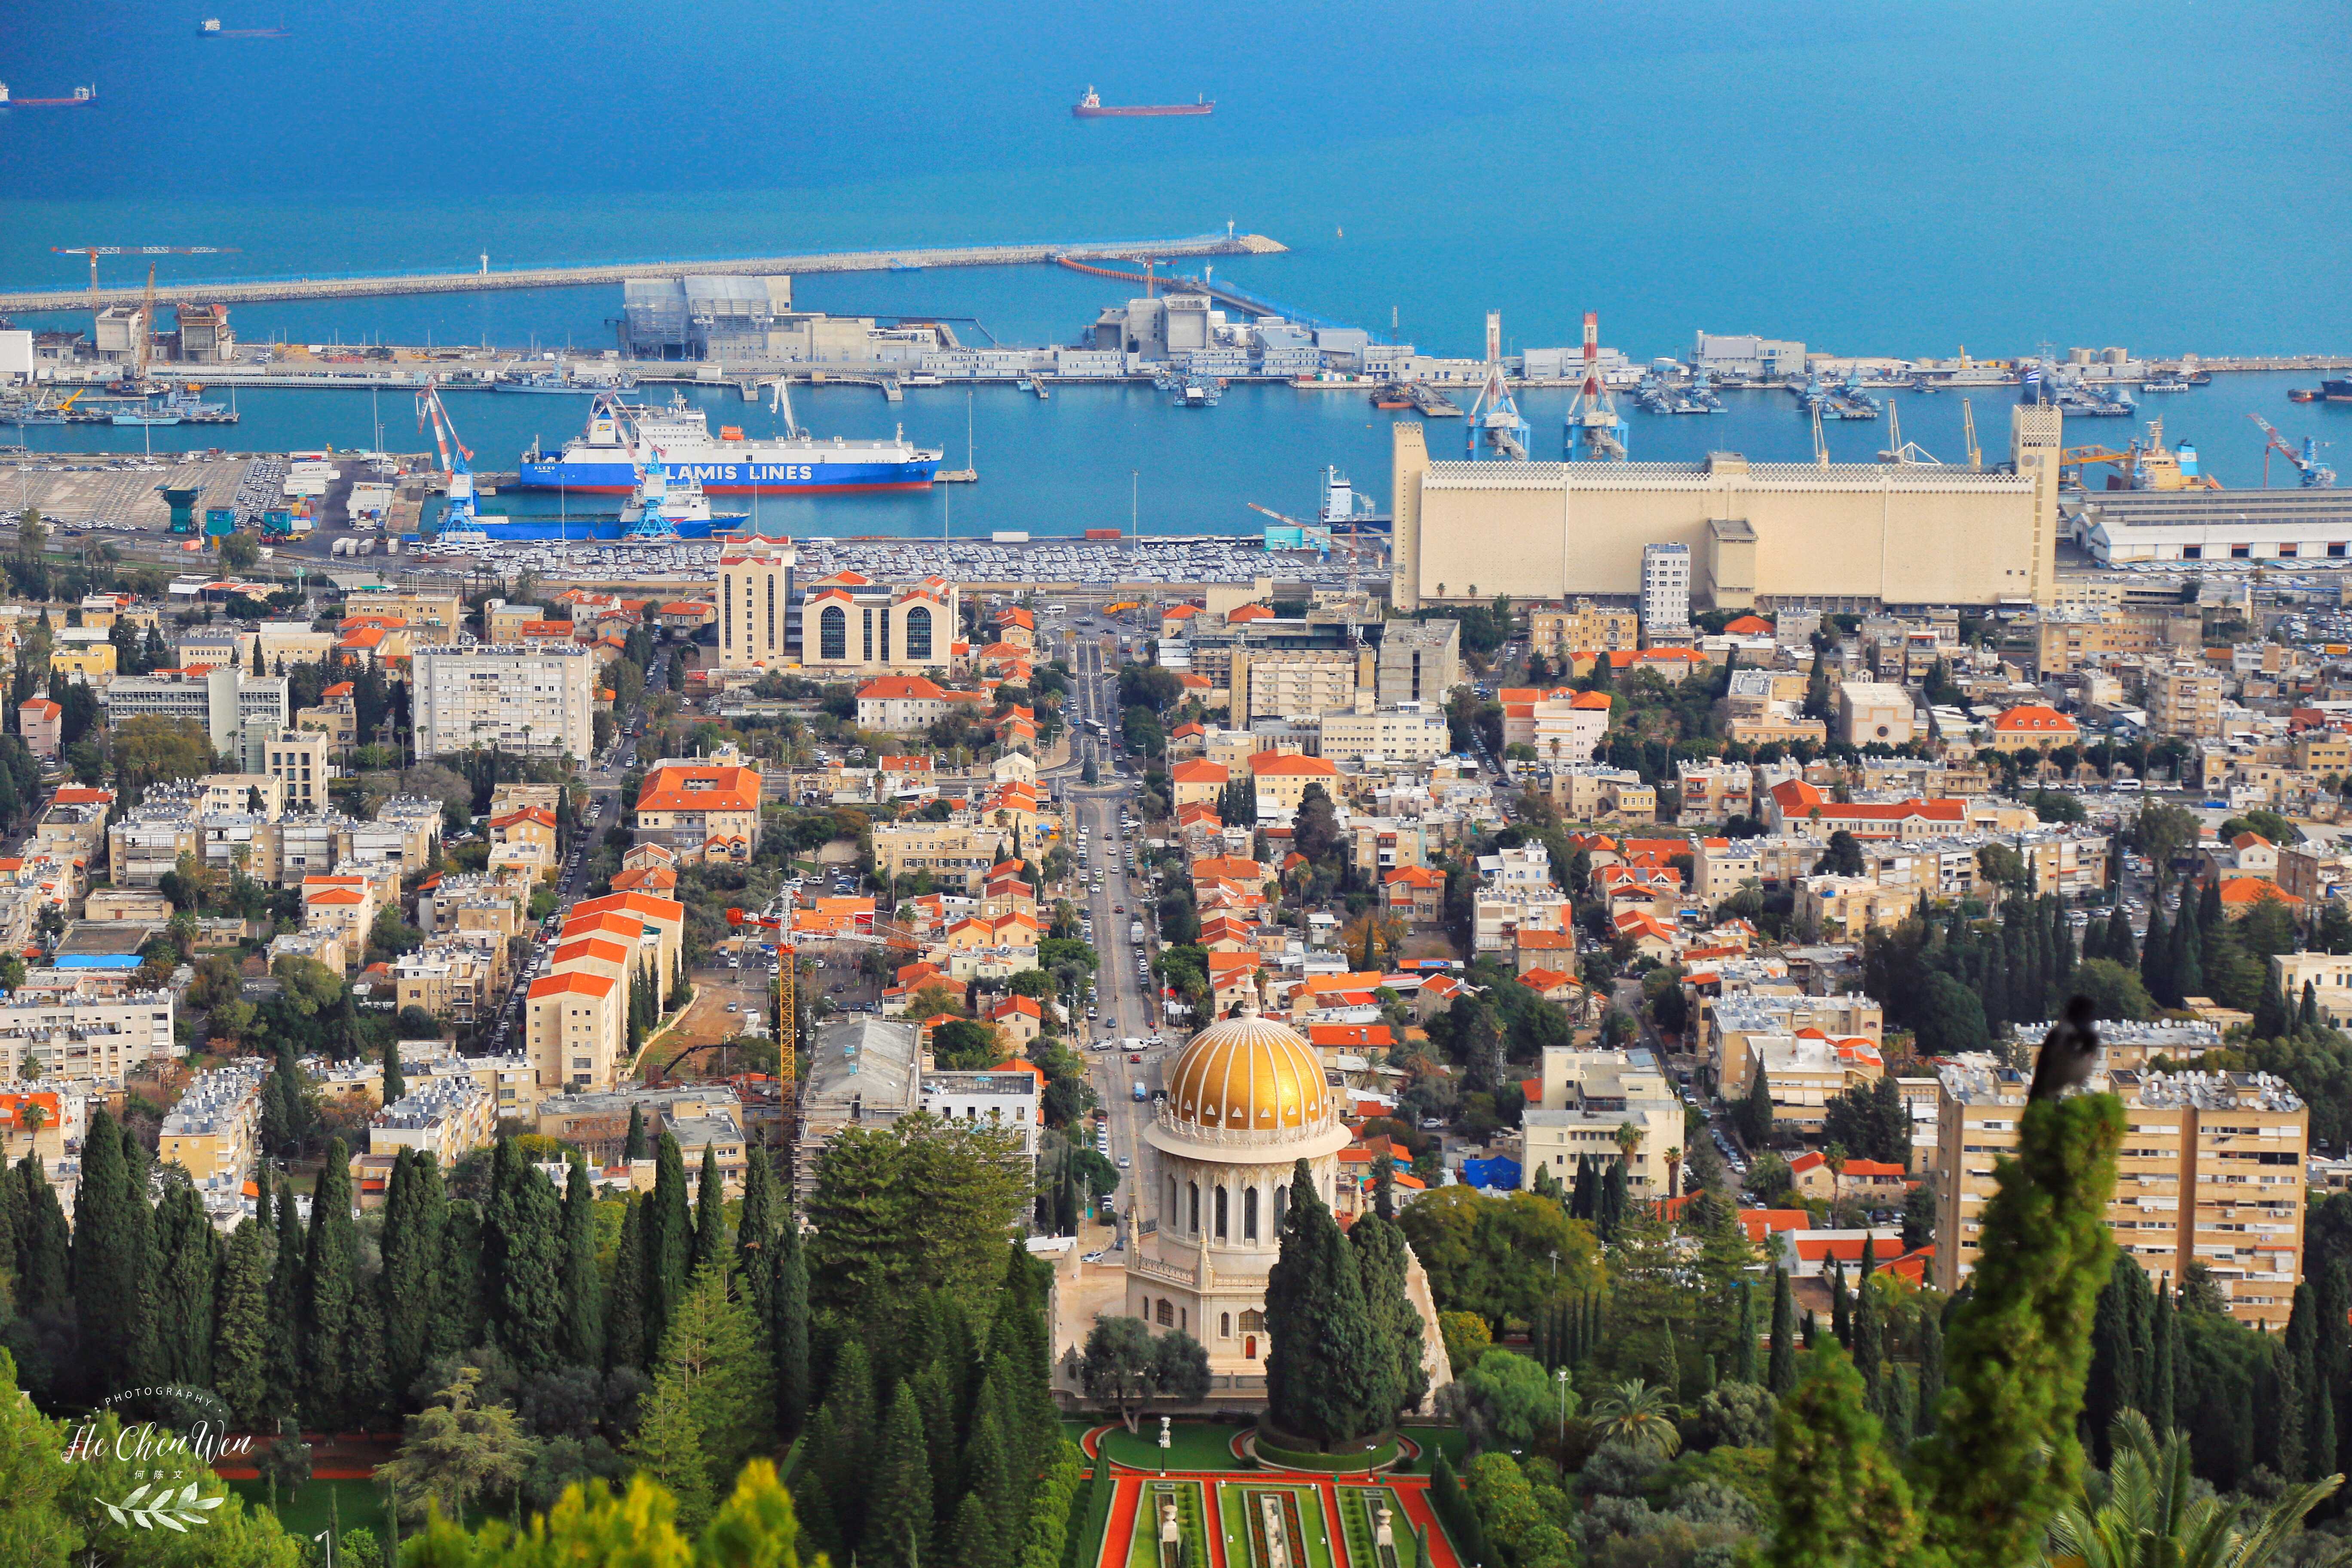 以色列最大的港口城市,美丽的海岸,也是以色列第三大城市